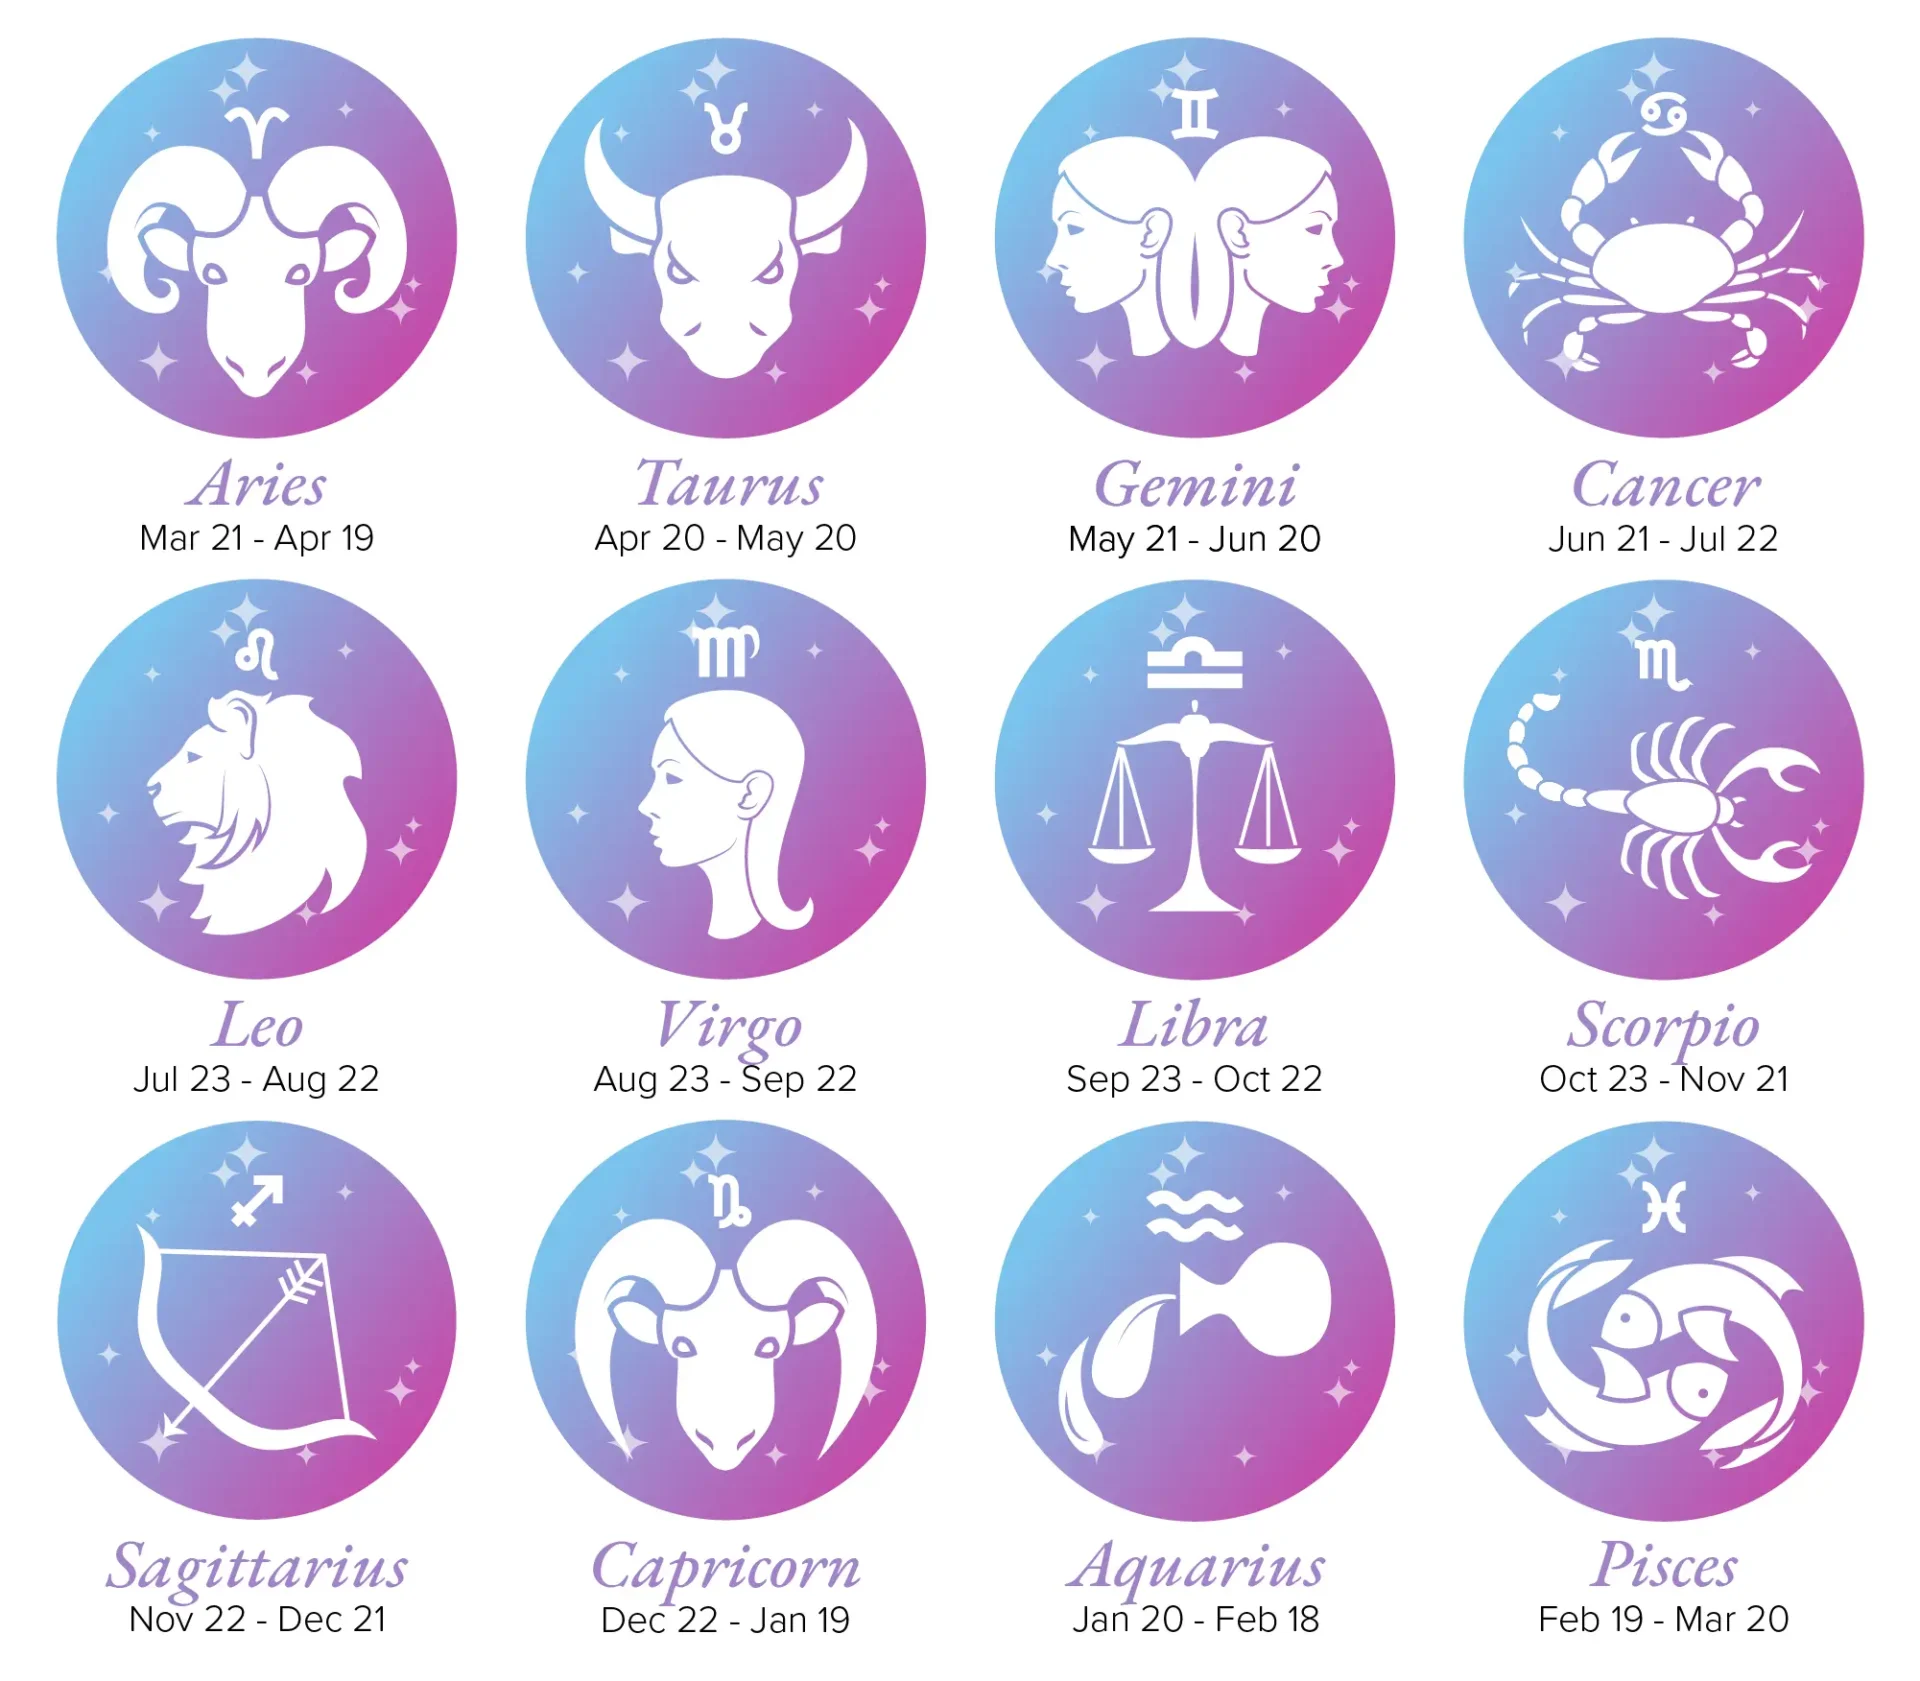 Is It a Sin to Believe in Zodiac Signs?